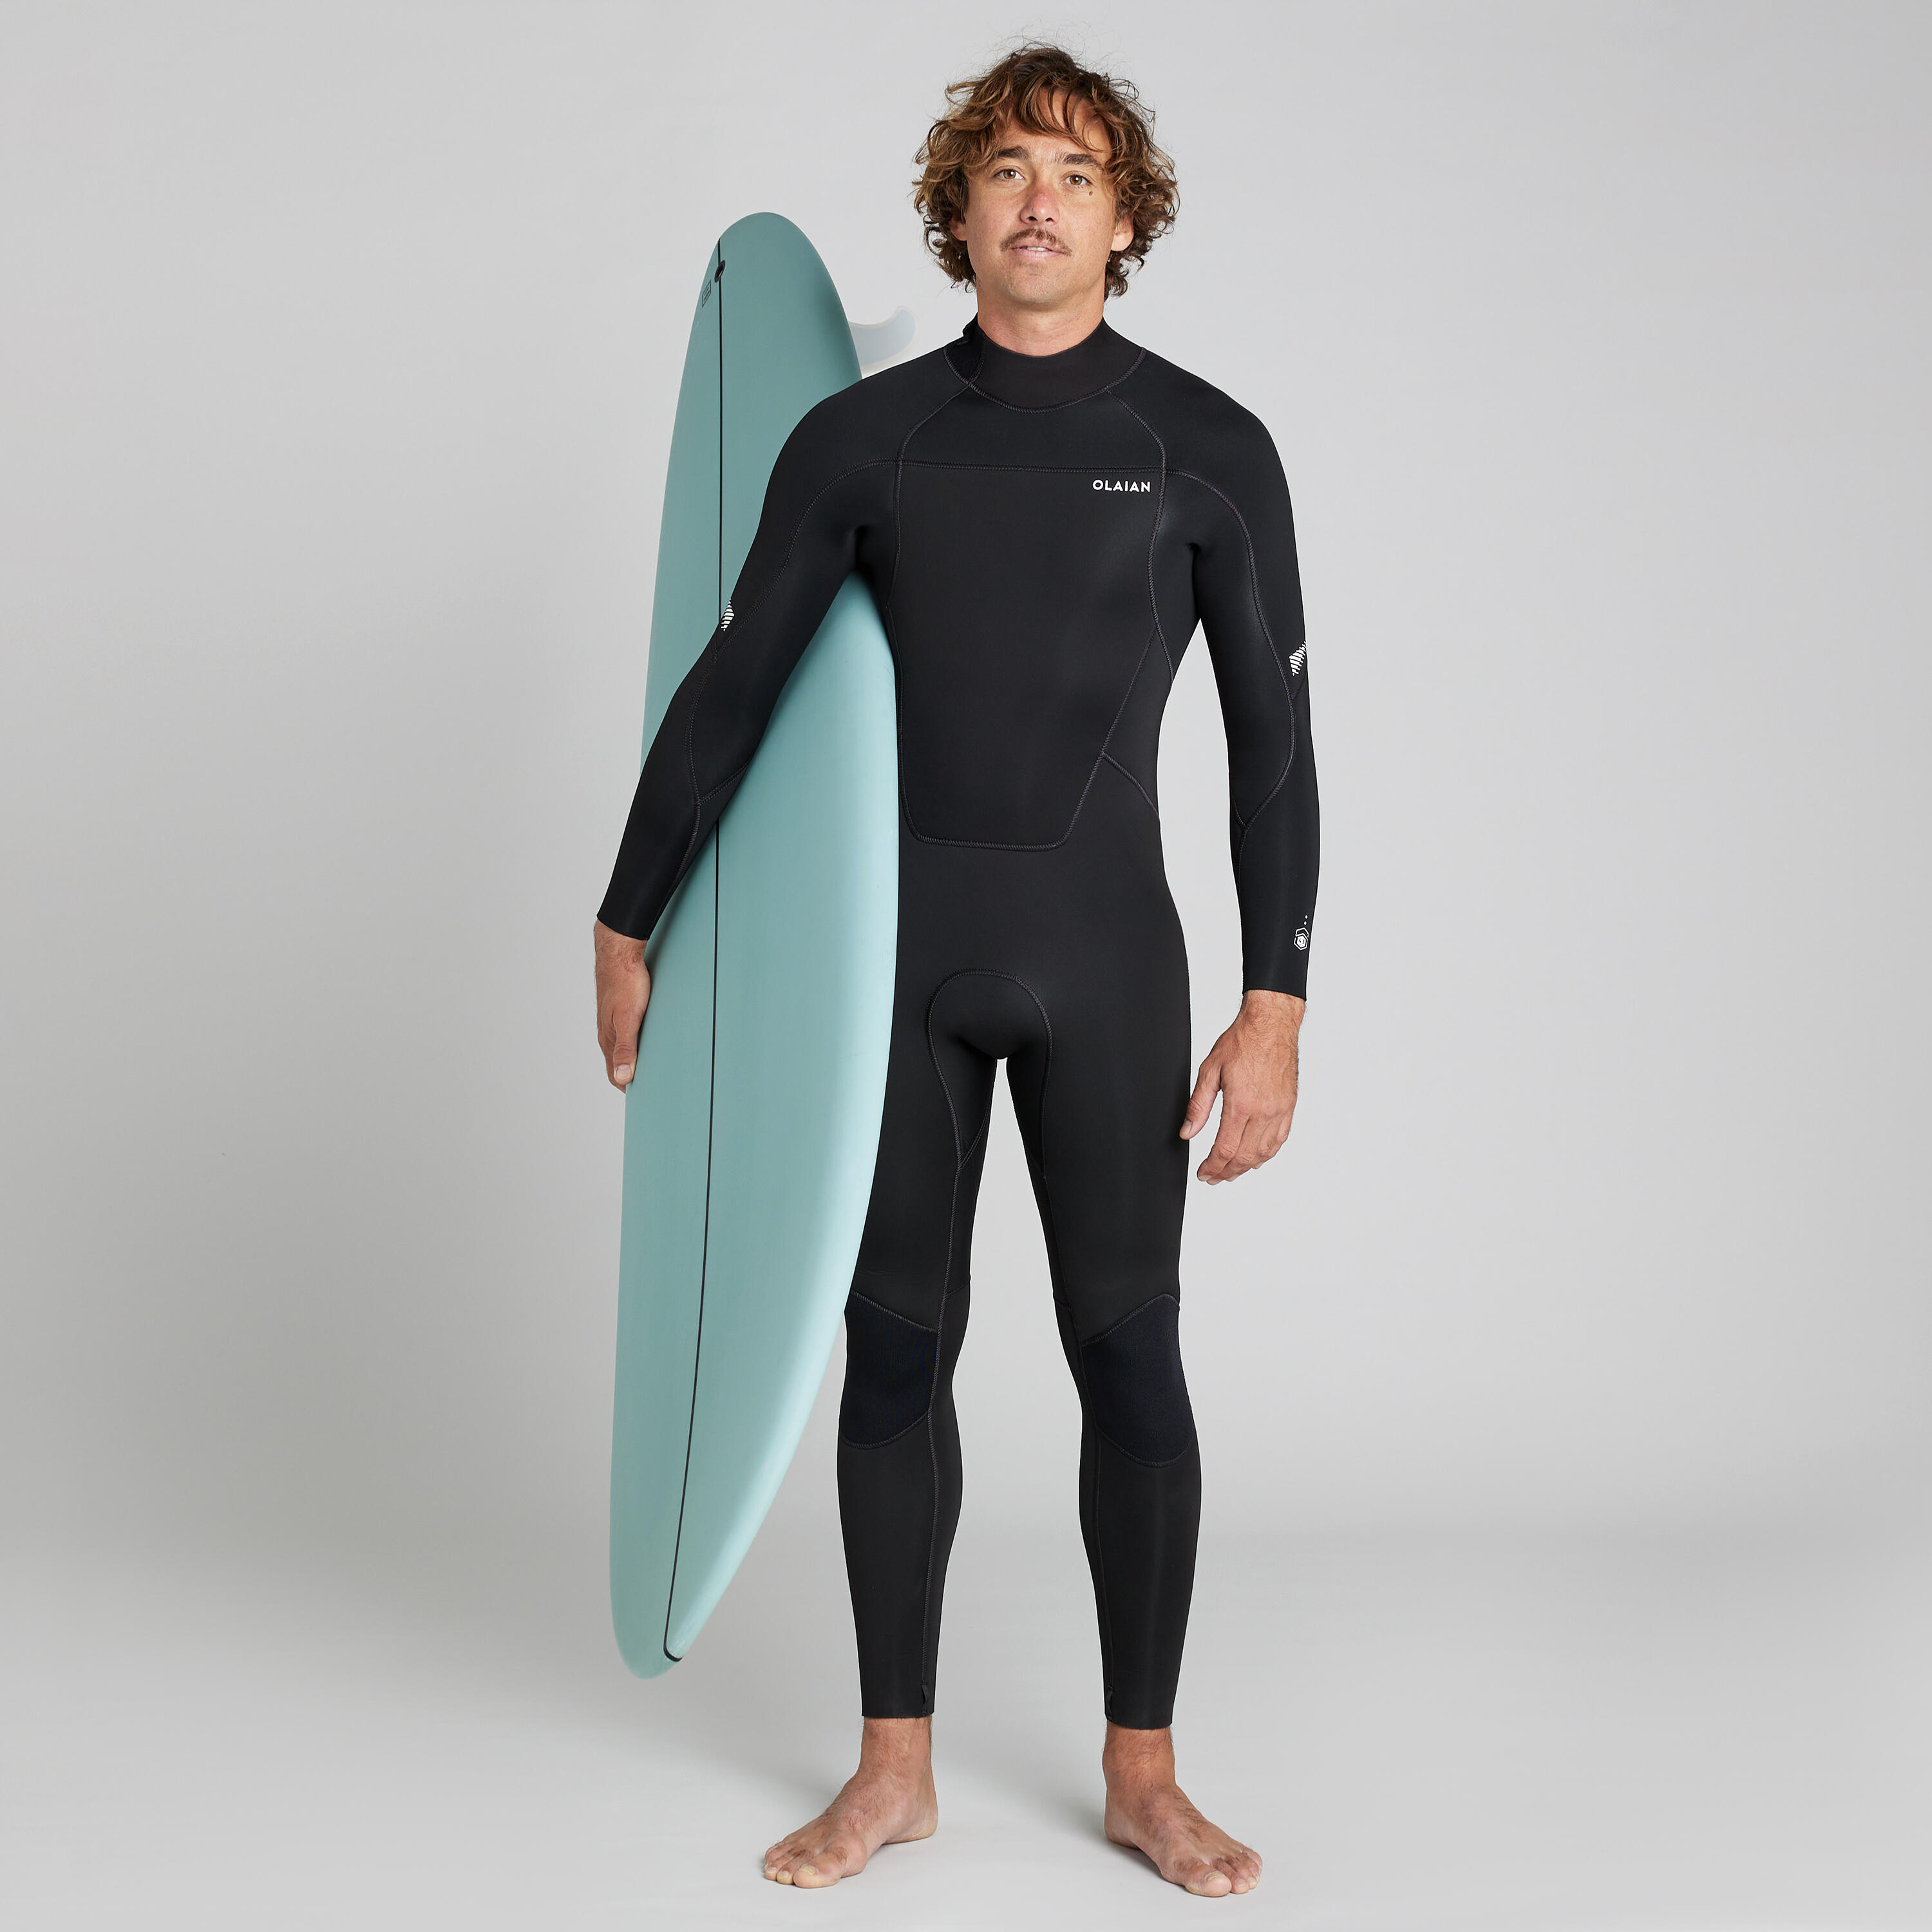 OLAIAN Men's 4/3 mm neoprene SURF 500 wetsuit black